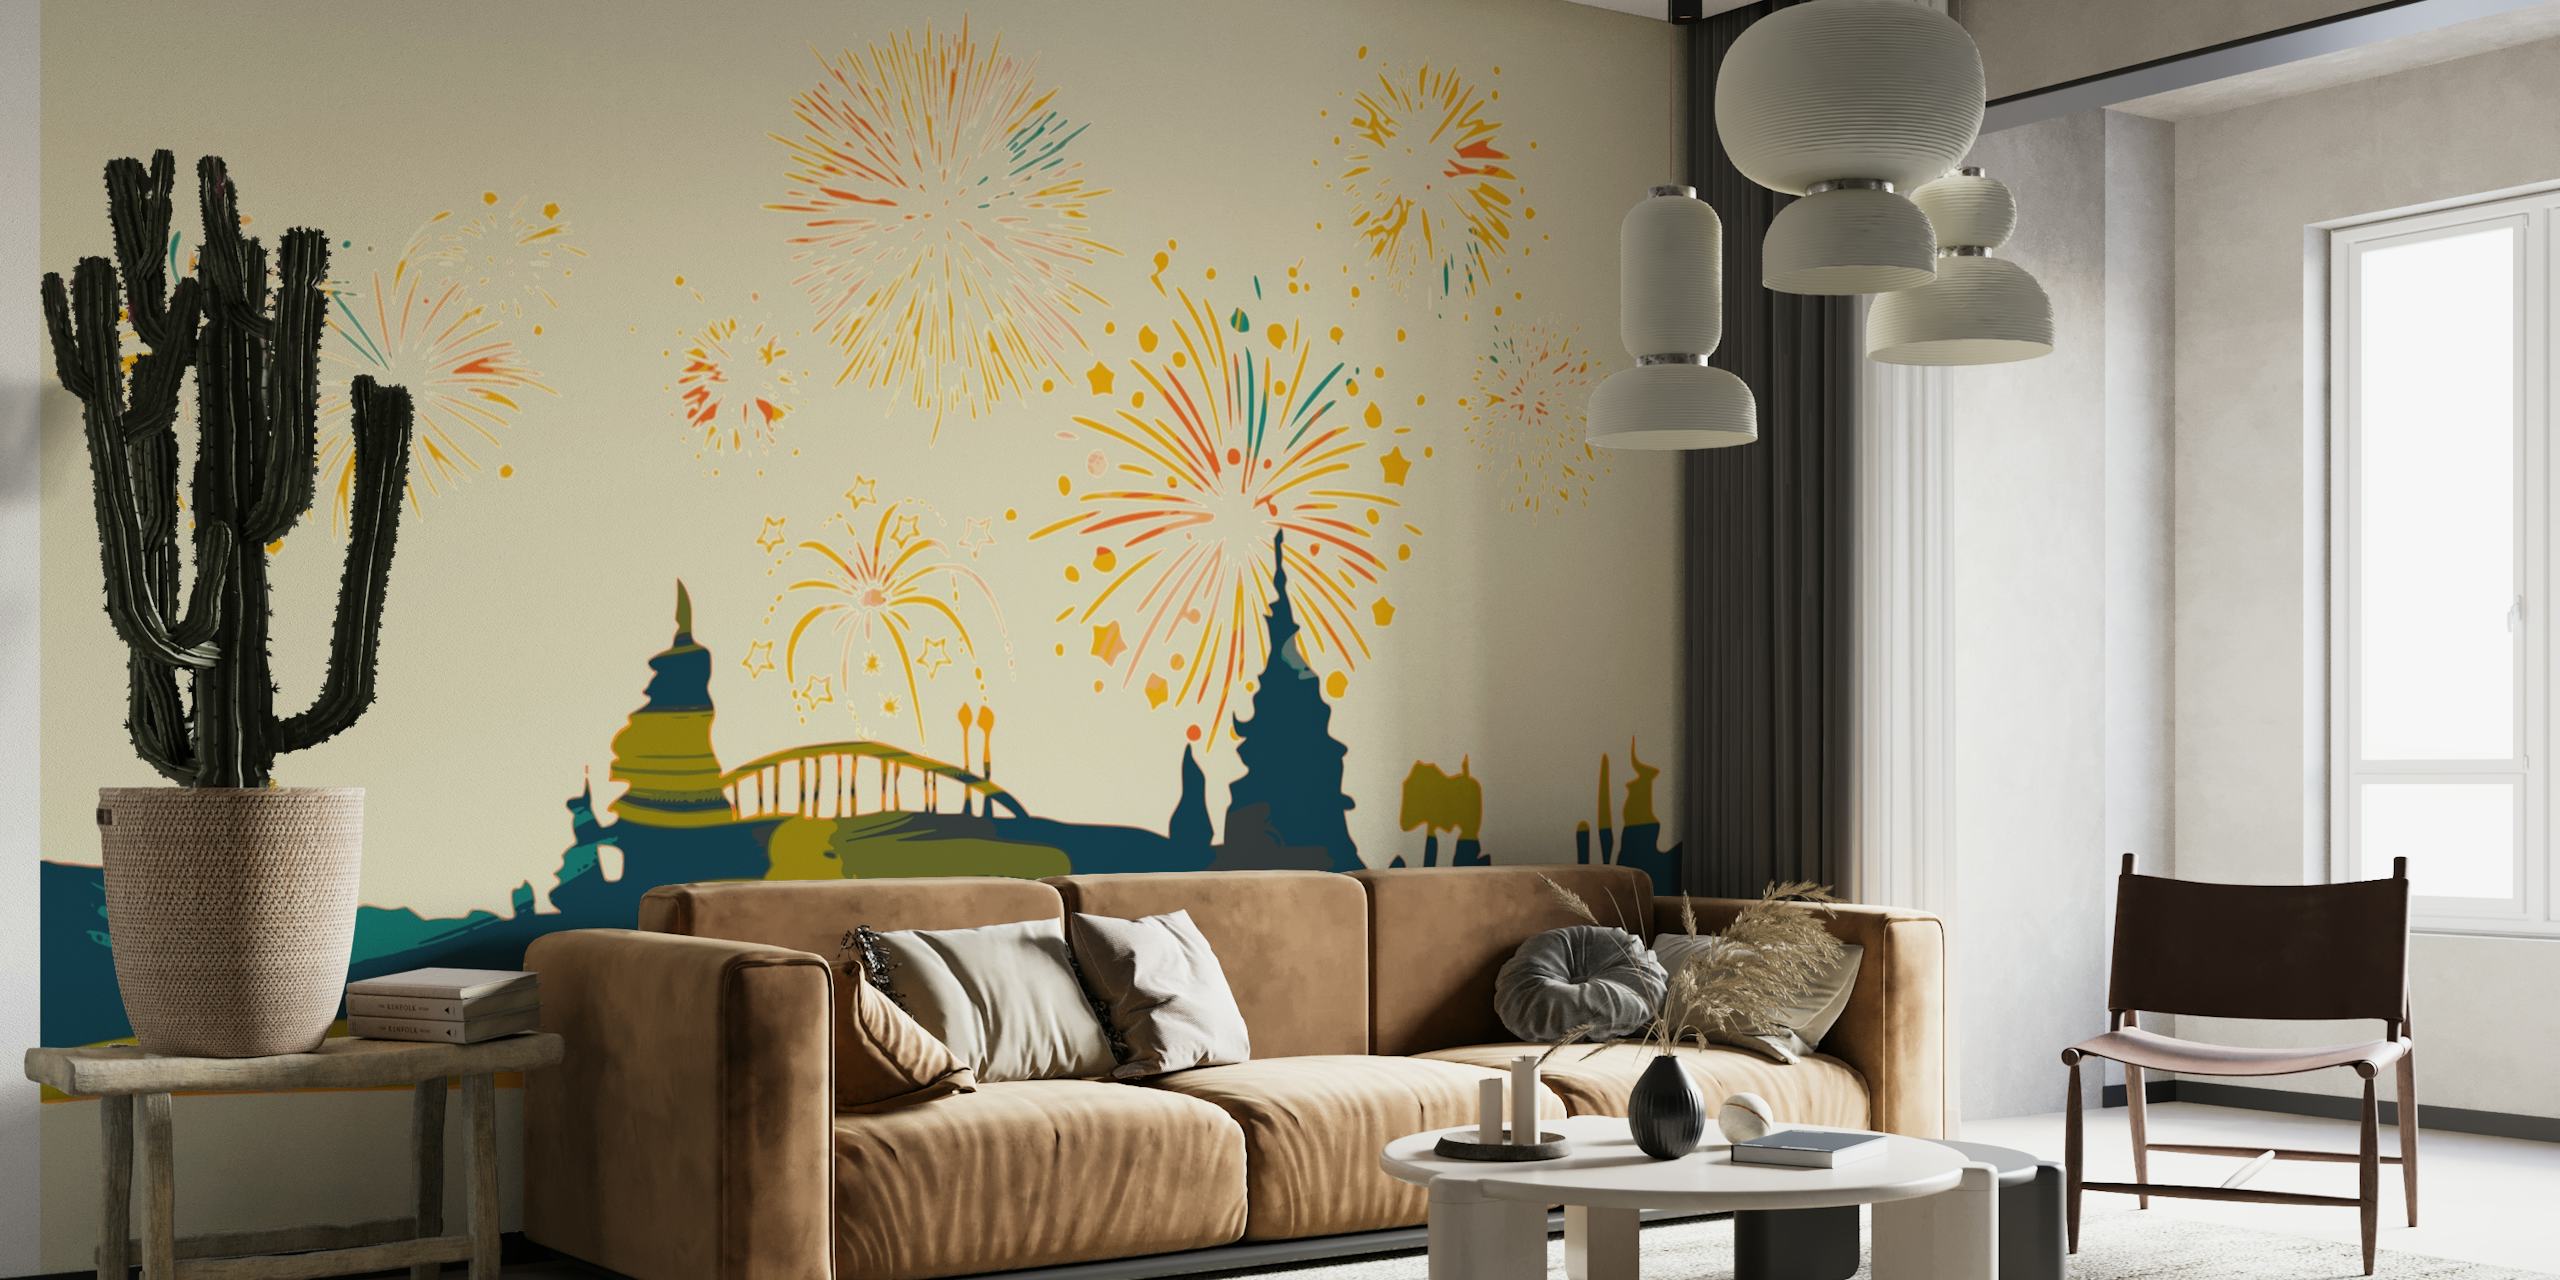 Apstraktni šareni zidni mural s gradskim pejzažom i vatrometom